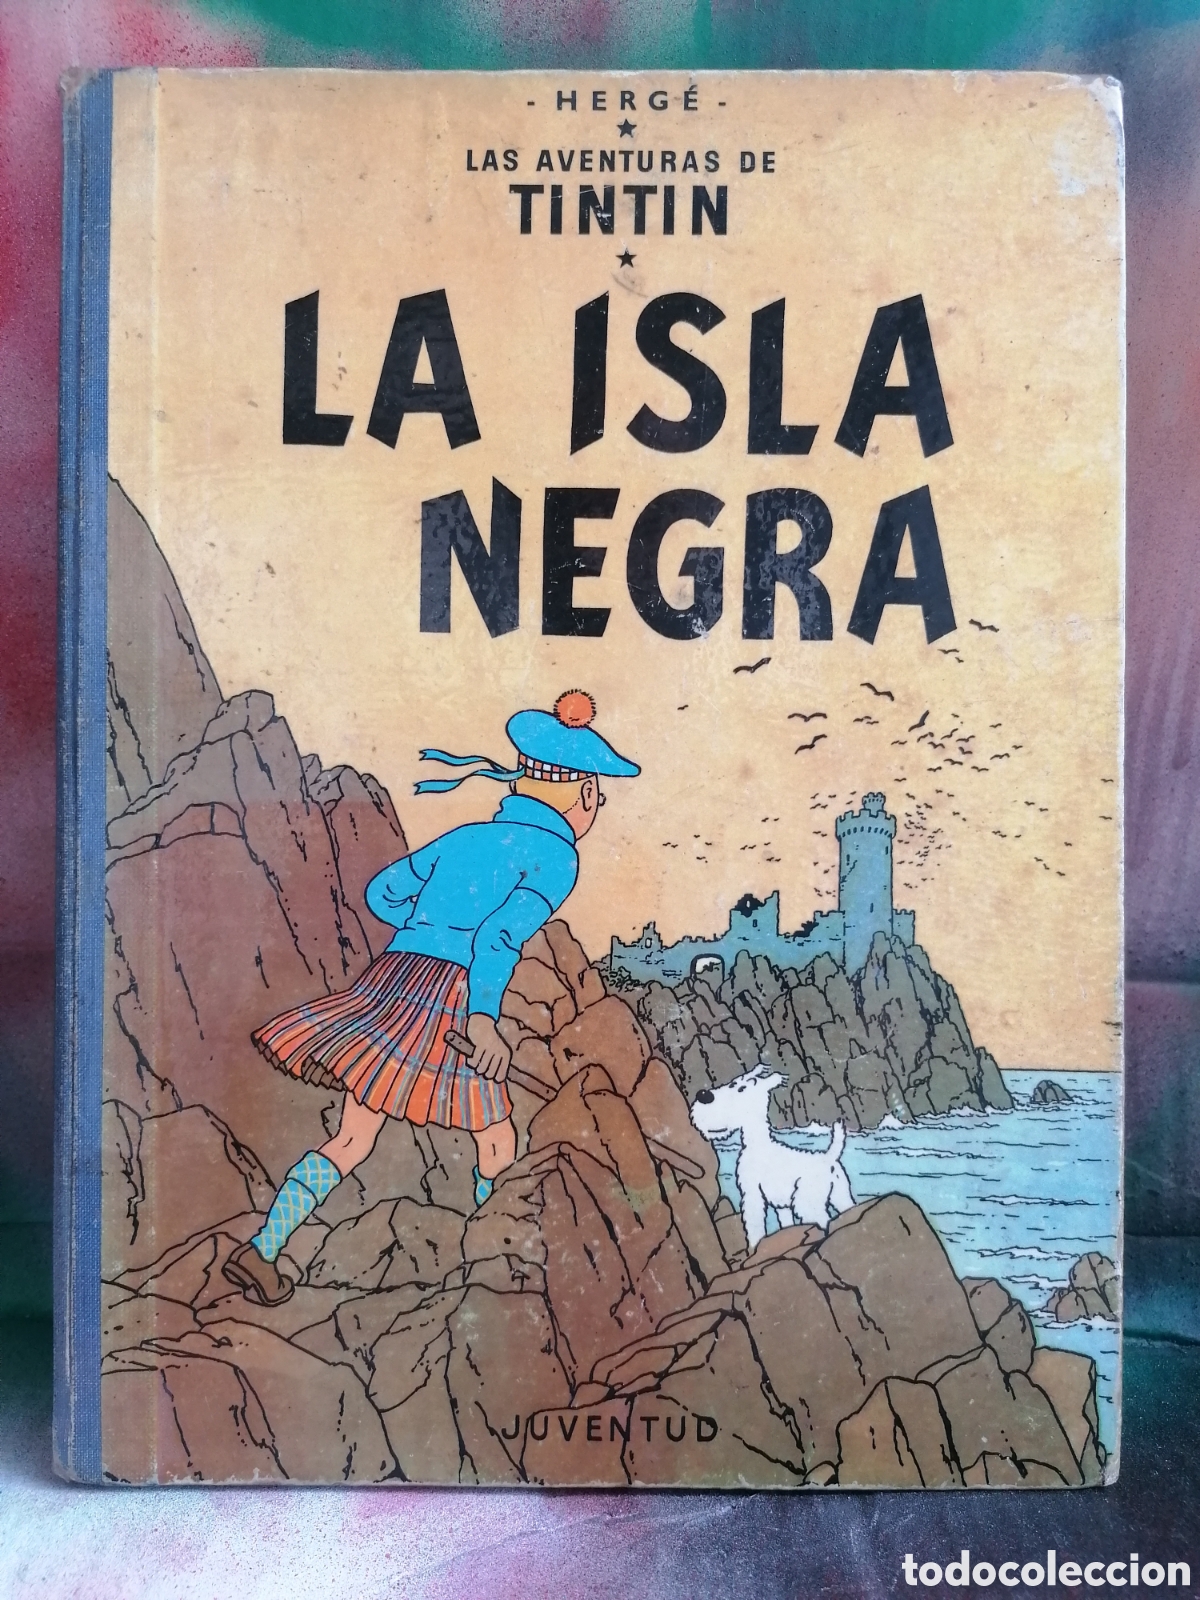 cómic tintin ”la isla negra”. primera edición ( - Comprar Comics Tintín  editorial Juventud no todocoleccion